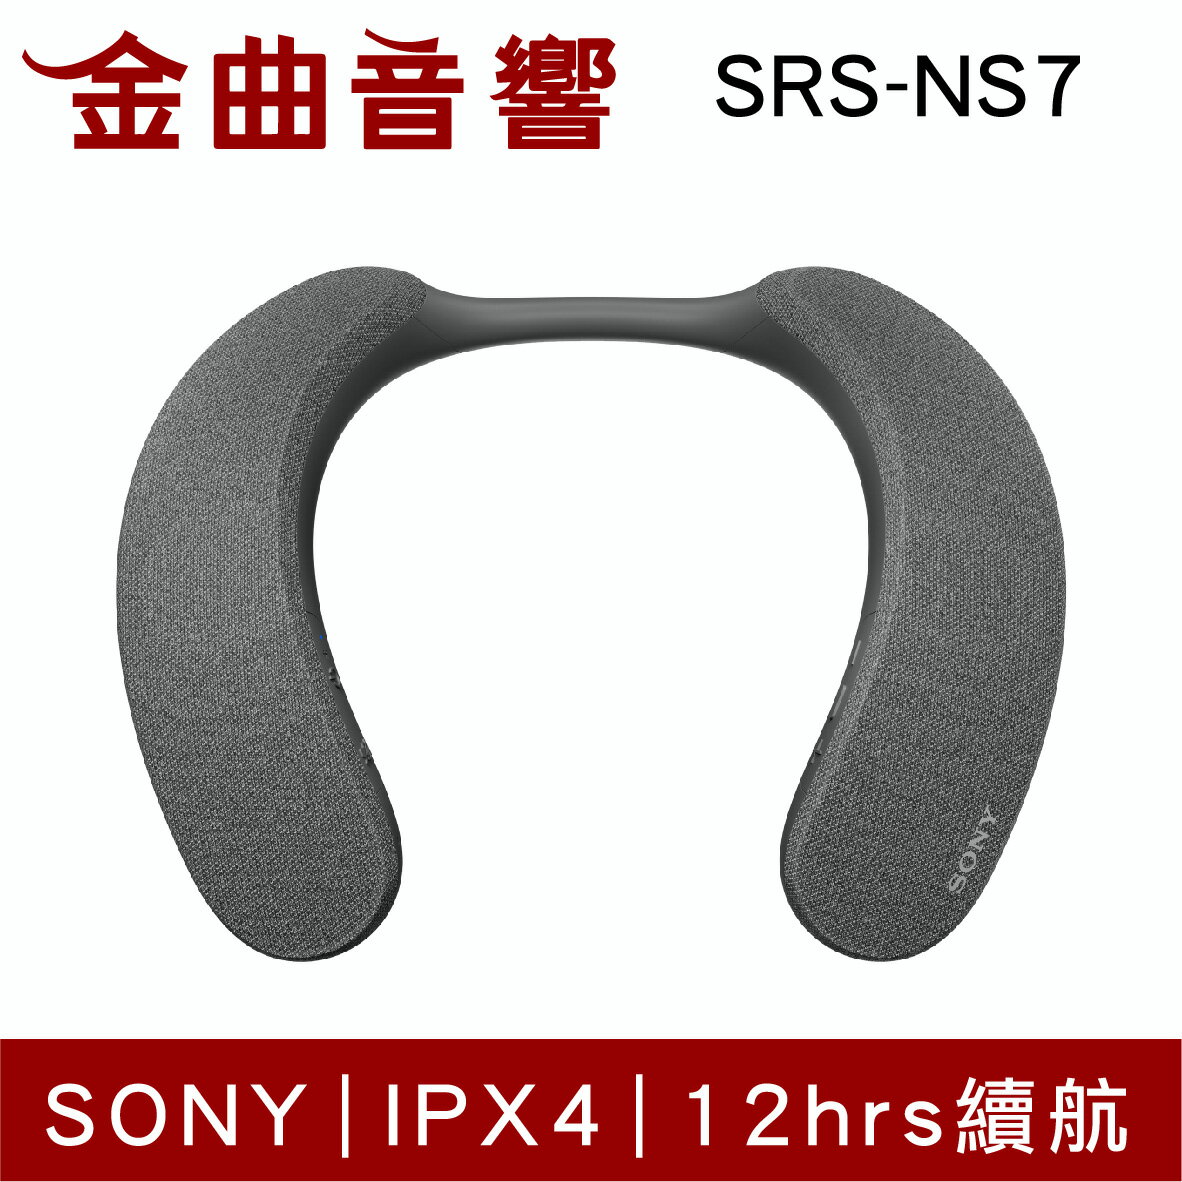 Sony 索尼 SRS-NS7 IPX4 12hr續航 多點連線 無線 頸掛 穿戴式 揚聲器 | 金曲音響